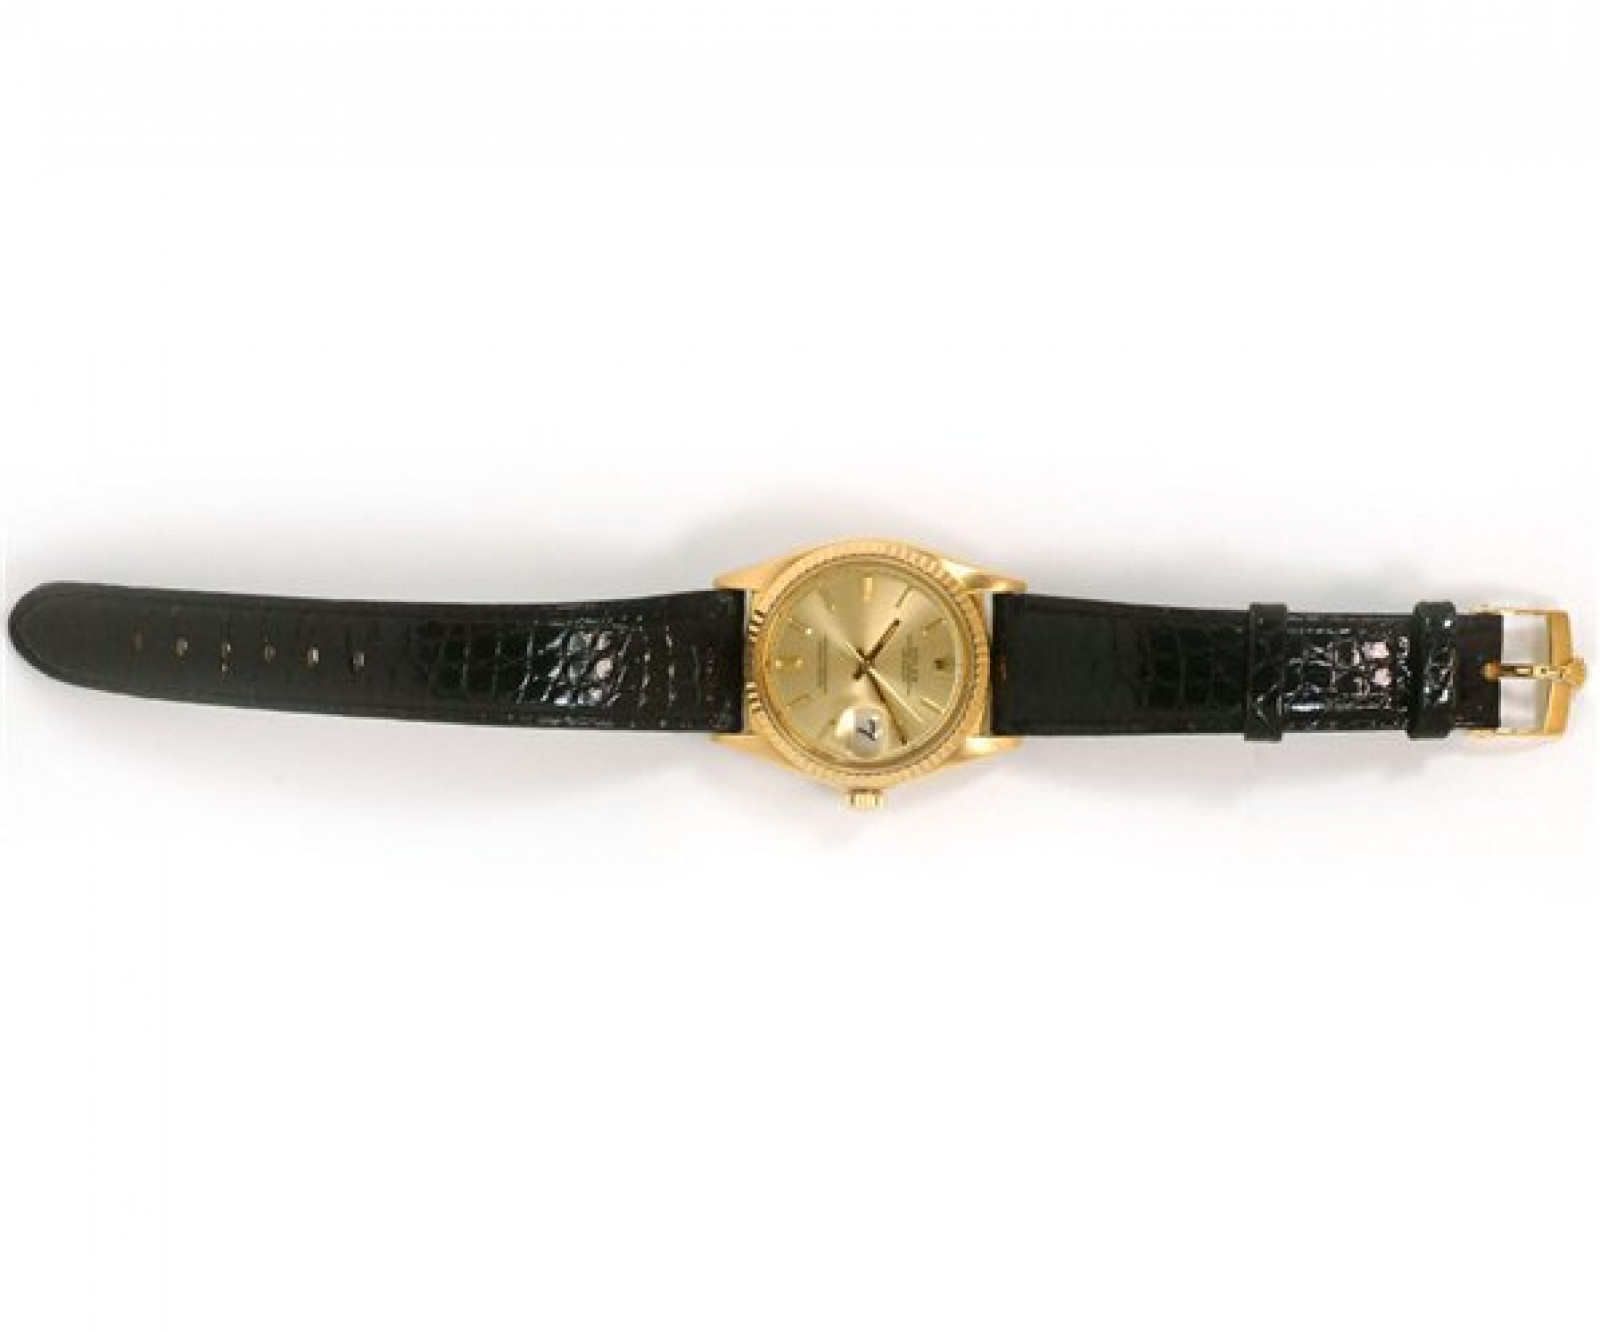 Vintage Rare Rolex Datejust 1601 Gold Year 1966